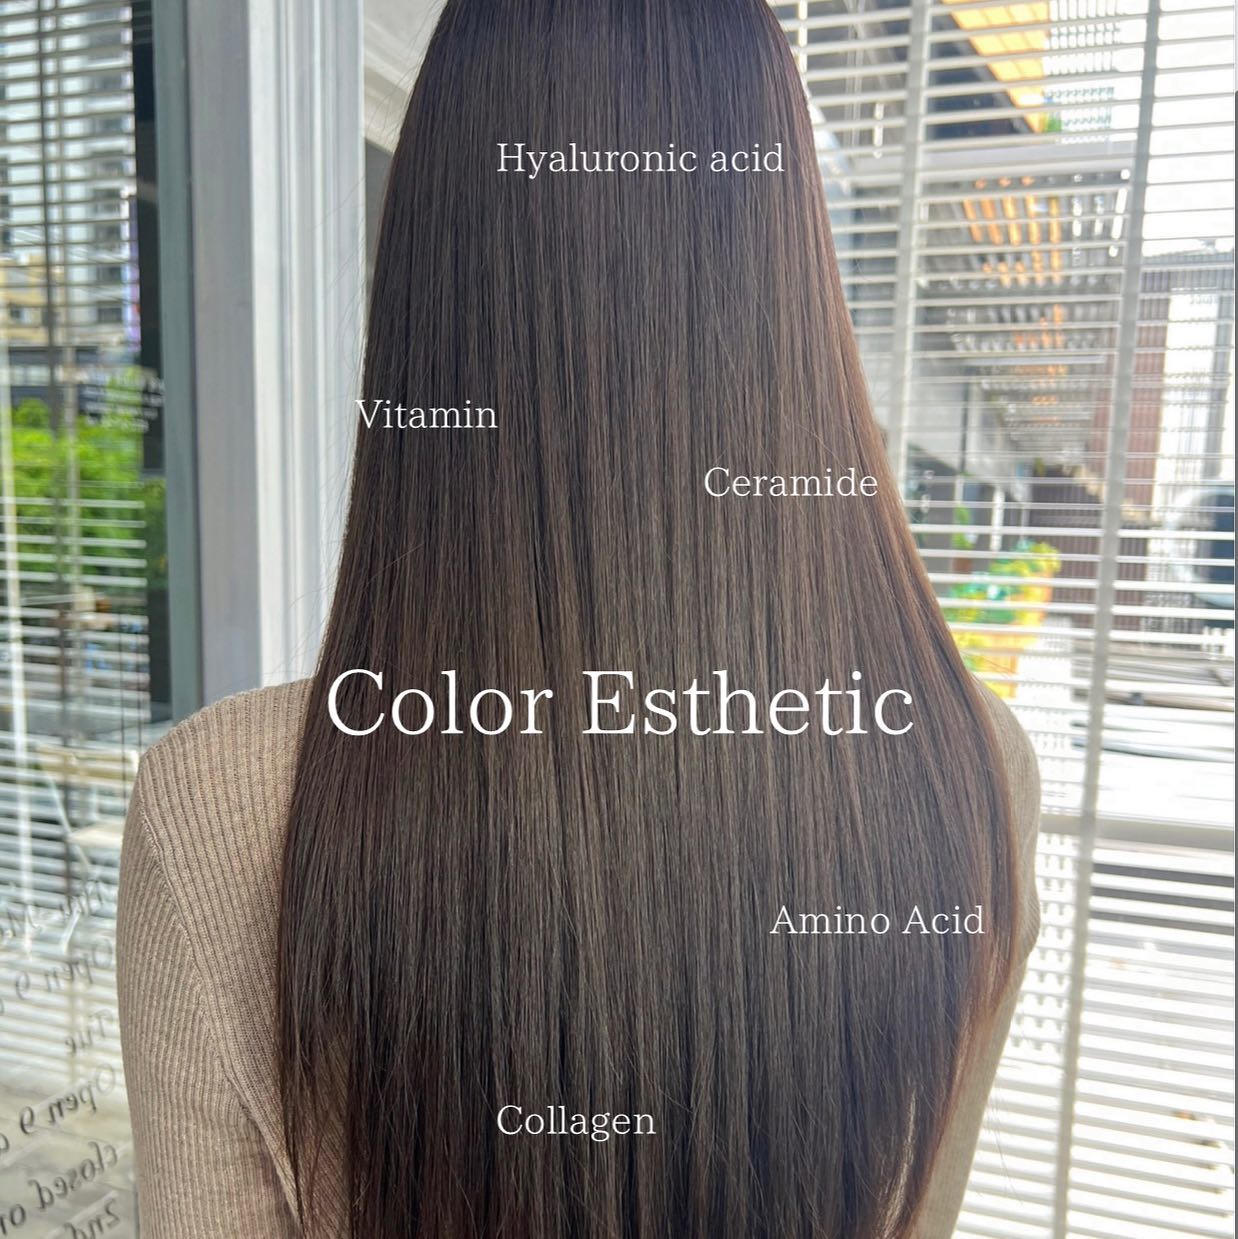 Color Esthetic  สี่:Lavender Ash  ถึงแม้จะเป็นรายการเกี่ยวกับการทำสีผม แต่ก็สามารถทำให้เส้นผมมีสุขภาพที่ดีขึ้นได้🤫  เมนูCuu's hair เป็นเมนูยอดนิยม จำเป็นต้องจำกัดสิทธิ์ในการจองคิว แนะนำให้ทุกท่านรีบติดต่อทางเราเพื่อสำรองคิวไว้ล่วงหน้า
สำหรับเมนูนี้เป็นการทำสีพร้อมกับการดูแลเส้นผมด้วยการเติมสารอาหารจำนวนมาก เช่น เคราติน คอลลาเจน กรดอะมิโน กรดไฮยาลูโรนิก เซราไมด์ ฯลฯ 
ไม่ว่าจะเป็นพื้นผมธรรมดา หรือพื้นผมที่ผ่านการฟอก ผมจะดูเงางามขึ้น เนื่องจากเส้นผมได้รับการบำรุงดูแลจากภายใน ไม่ว่าจะมีสภาพเส้นผมอย่างไรผมจะดีขึ้นได้อย่างแน่นอน  แนะนำ!! เหมาะสำหรับผู้ที่ต้องการทำสีผมแต่ไม่ต้องการให้เส้นผมหรือหนังศรีษะถูกทำลายหรือได้รับความเสียหาย   อยากให้ทุกท่านได้สัมผัสกับเมนูทำผมอย่างเต็มรูปแบบที่สัมผัสได้ที่ CUU’s hair ที่เดียวเท่านั้น ‍♀️  Color Esthetic
7300 บาท → 4600 บาท
ตัด ,ทำสี ,ให้คำปรึกษา, ดีท็อกซ์หนังศีรษะ,สระผม, แชมพู ,ทรีทเม้นท์, เซ็ท, เป่า,การรับประกัน (ฟรี) ปรึกษาทางไลน์ (ฟรี) + ตัดหน้าม้าหลังทำ 3 สัปดาห์  ระยะเวลาที่ใช้ : ประมาณ 3 ชั่วโมง  カラーエステは…  ヘアカラーメニューなのに髪の毛が良くなります🤫  クーズヘアの人気メニュー、予約に制限を設けているのでご予約はお早めに！
ケラチン、コラーゲン、アミノ酸、スーパーヒアルロン酸、セラミドなどなどここでは伝えきれない程の栄養をたくさん入れながらカラーの施術しています。普通の髪はもちろん、ブリーチ毛でも、とても艶が出て、髪の内部から栄養補給されてどんな髪でも本来の状態が必ず良くなります！
カラーしたいけど、髪や頭皮を傷ませたくない方におすすめです！  クーズヘアのオリジナル、髪エステ是非体験してください‍♀️  カラーエステ
7300バーツ→4600バーツ
カラー、カウンセリング、頭皮デトックス、髪クレンジング、シャンプー、トリートメント、カット（カットなしは７００Bオフ）セット、ブロー、技術保証（無料）ライン相談（無料）  所要時間: 約3時間  IG:cuushair
Facebook : Cuu's​ hair
TEL : 02-065-0909
#bangkok #thonglor #bangkokhairsalon #ผม #เกาหลี #ม้วนผมเกาหลี #ร้านเสริมสวย #ดัดผม #สไตล์เกาหลี #hairesthetic #organic